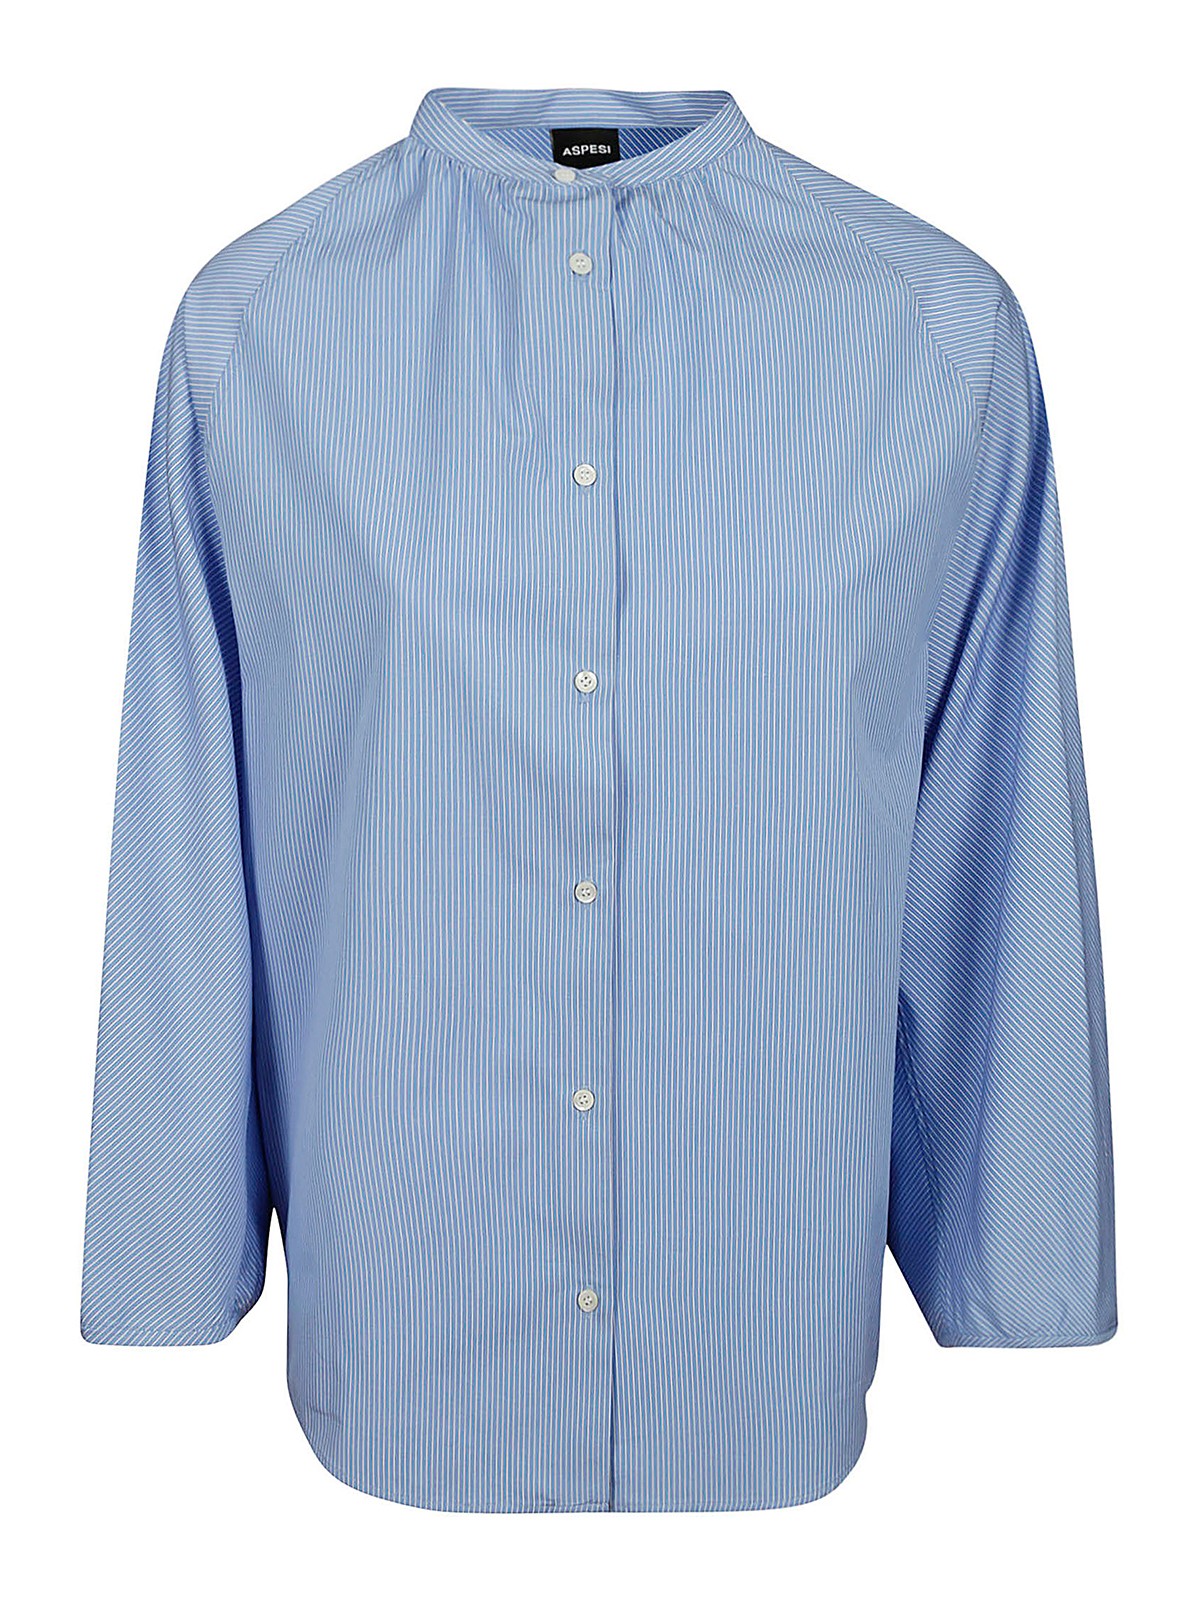 Aspesi Shirt Mod.5419 In Light Blue